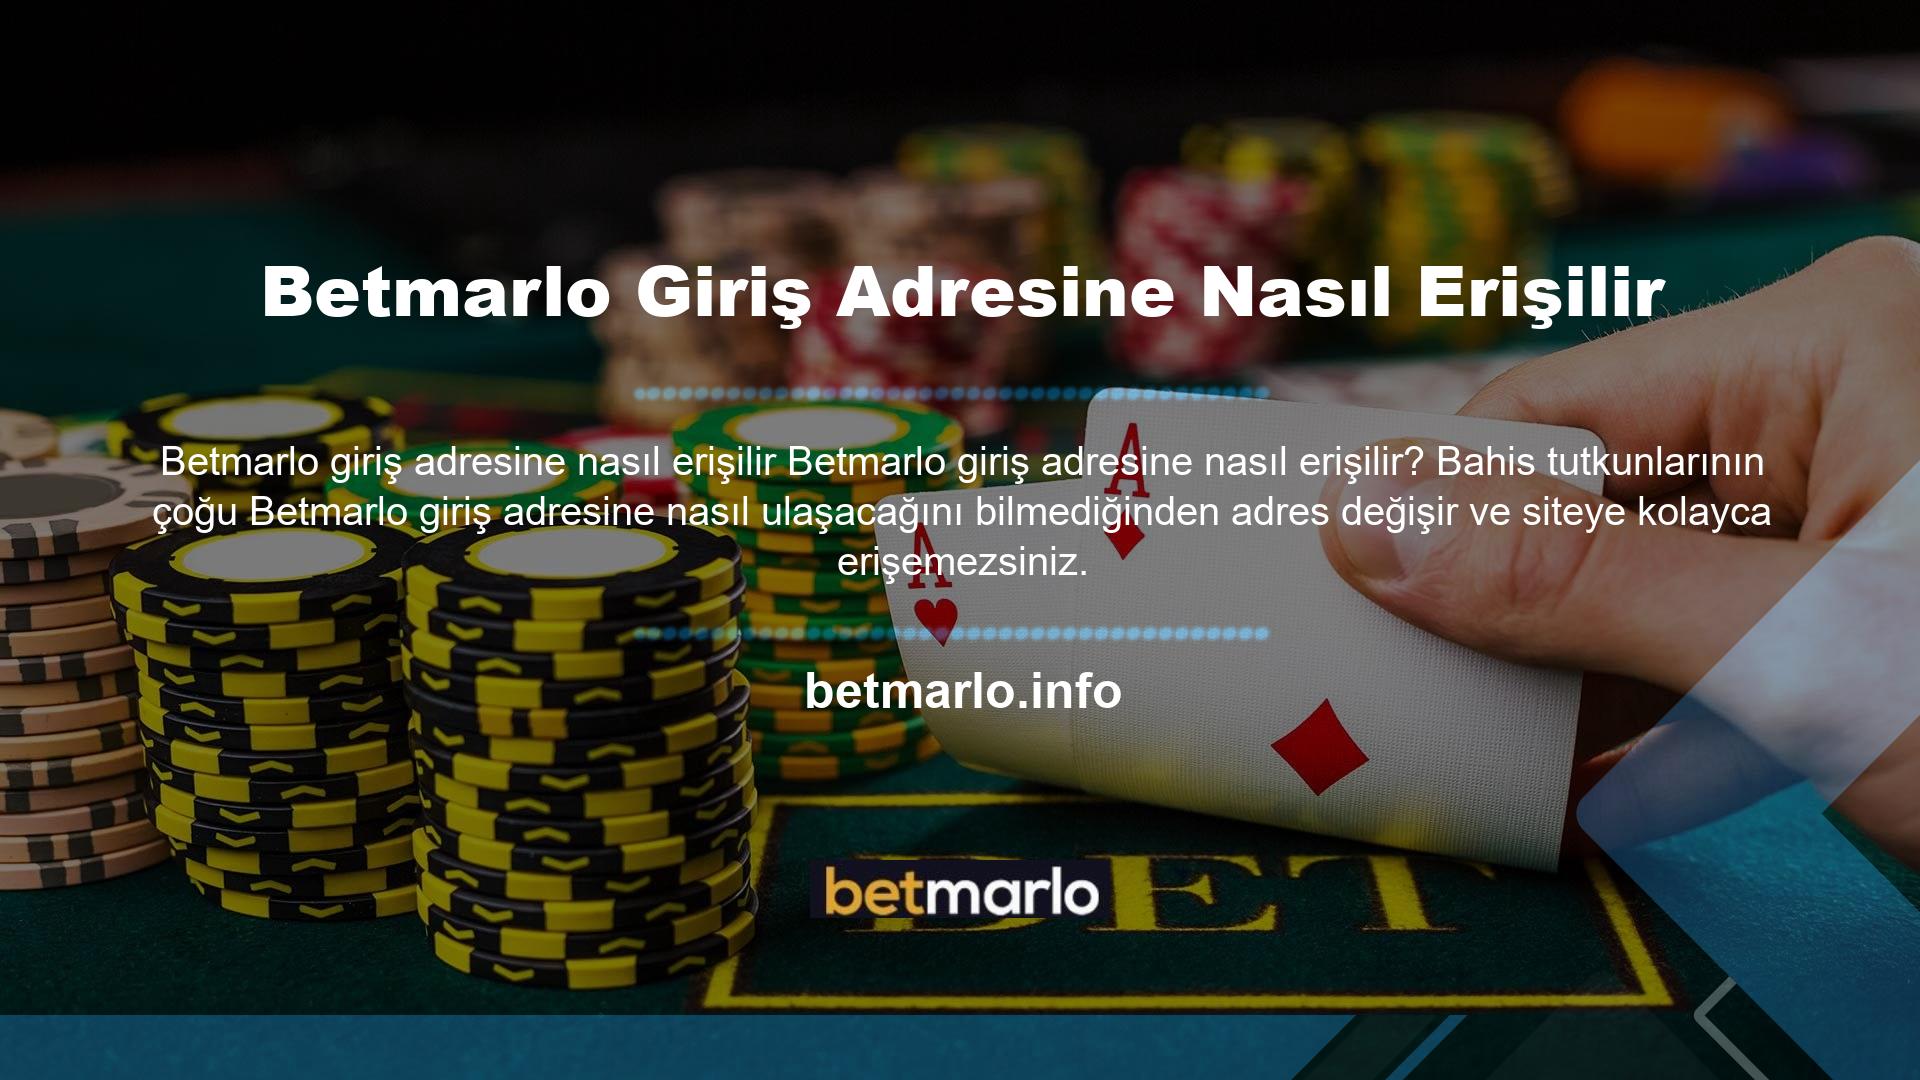 Aslında Betmarlo online casino sitesi oldukça uygun hizmetler sunmaktadır